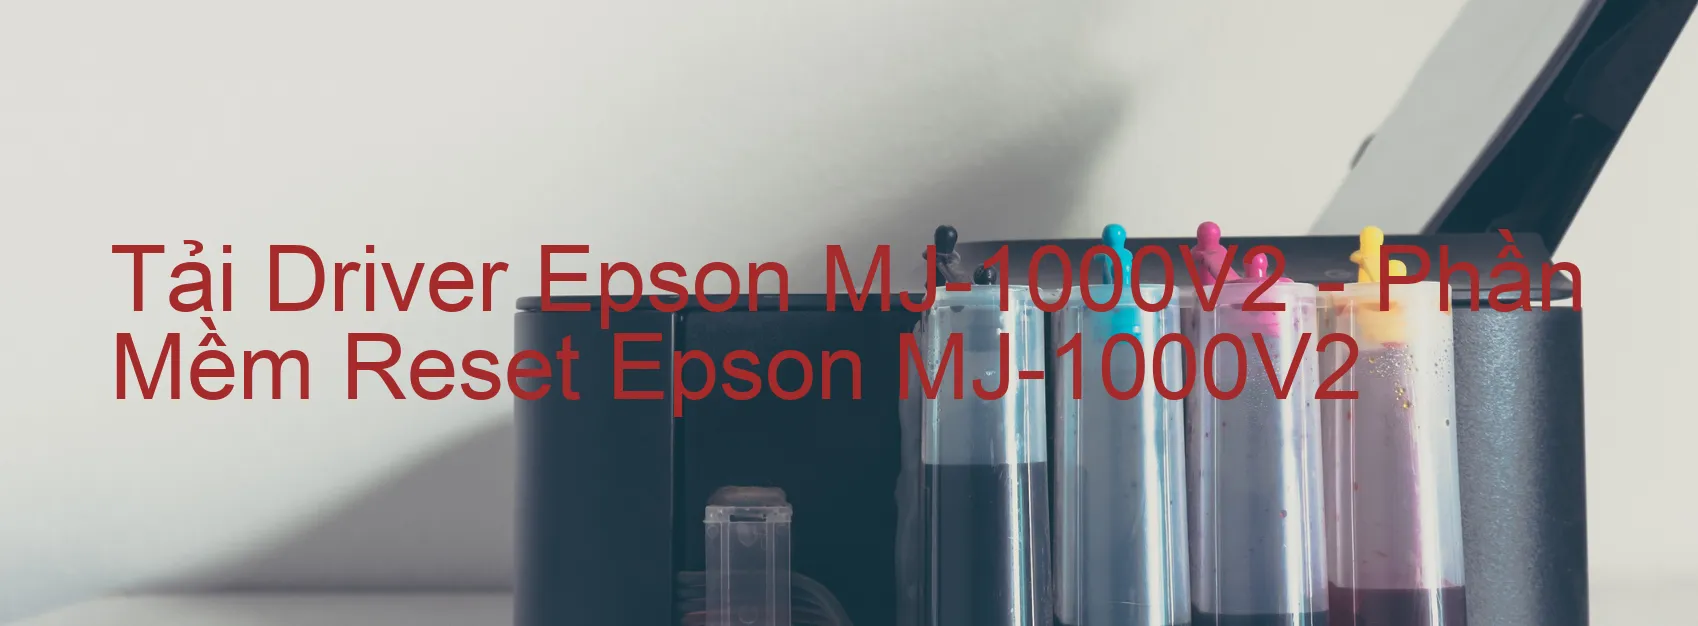 Driver Epson MJ-1000V2, Phần Mềm Reset Epson MJ-1000V2